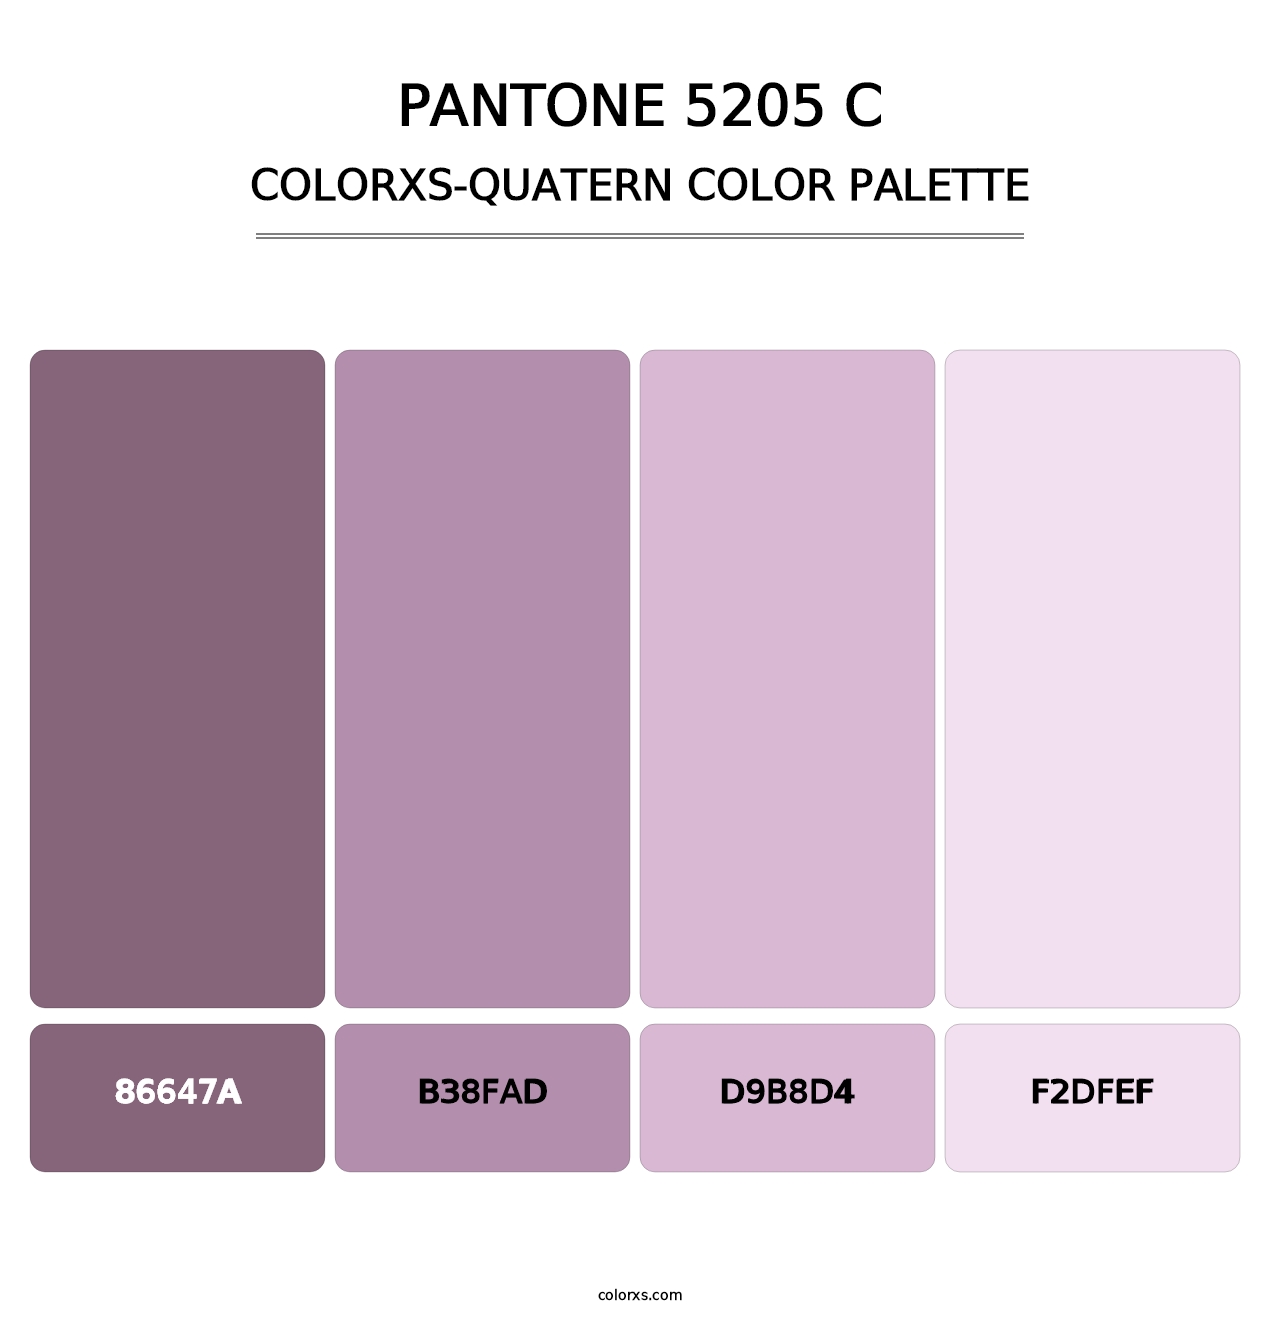 PANTONE 5205 C - Colorxs Quatern Palette